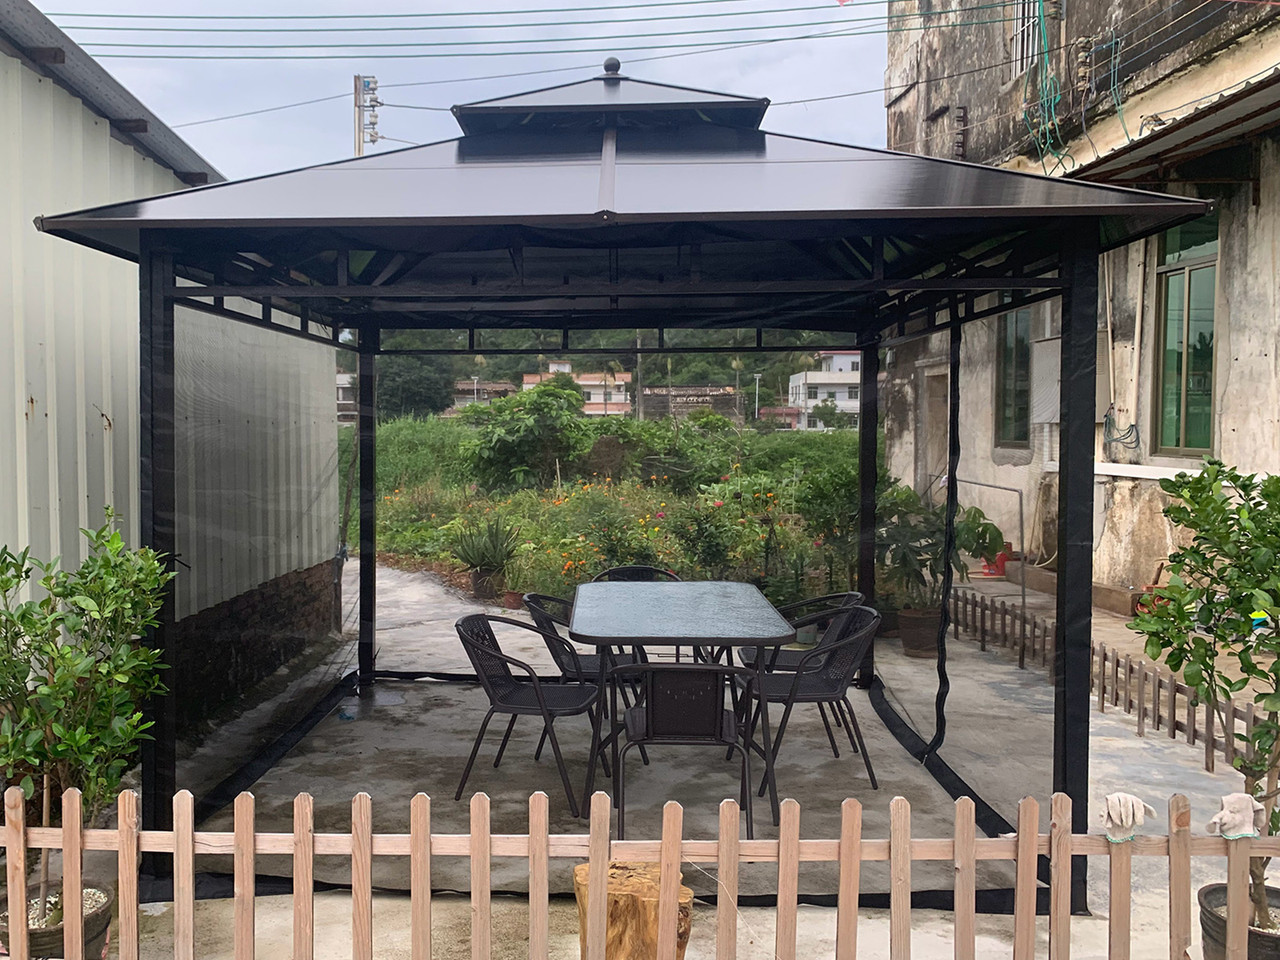 Outdoor Tent Anti-Mosquito Net Four-Corner Garden Courtyard Gazebo Net Cloth